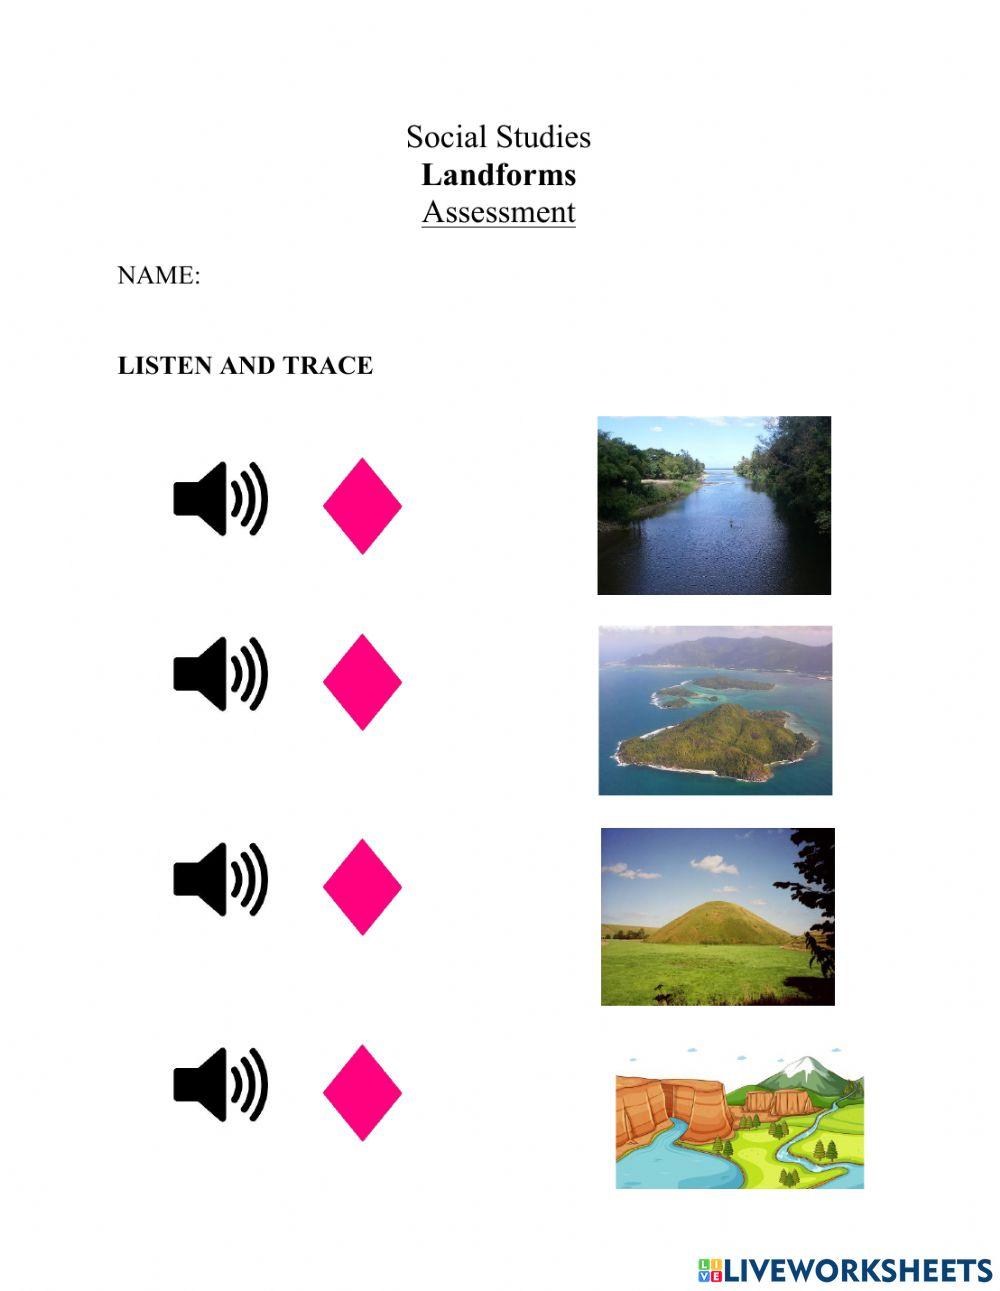 Landforms Assessment